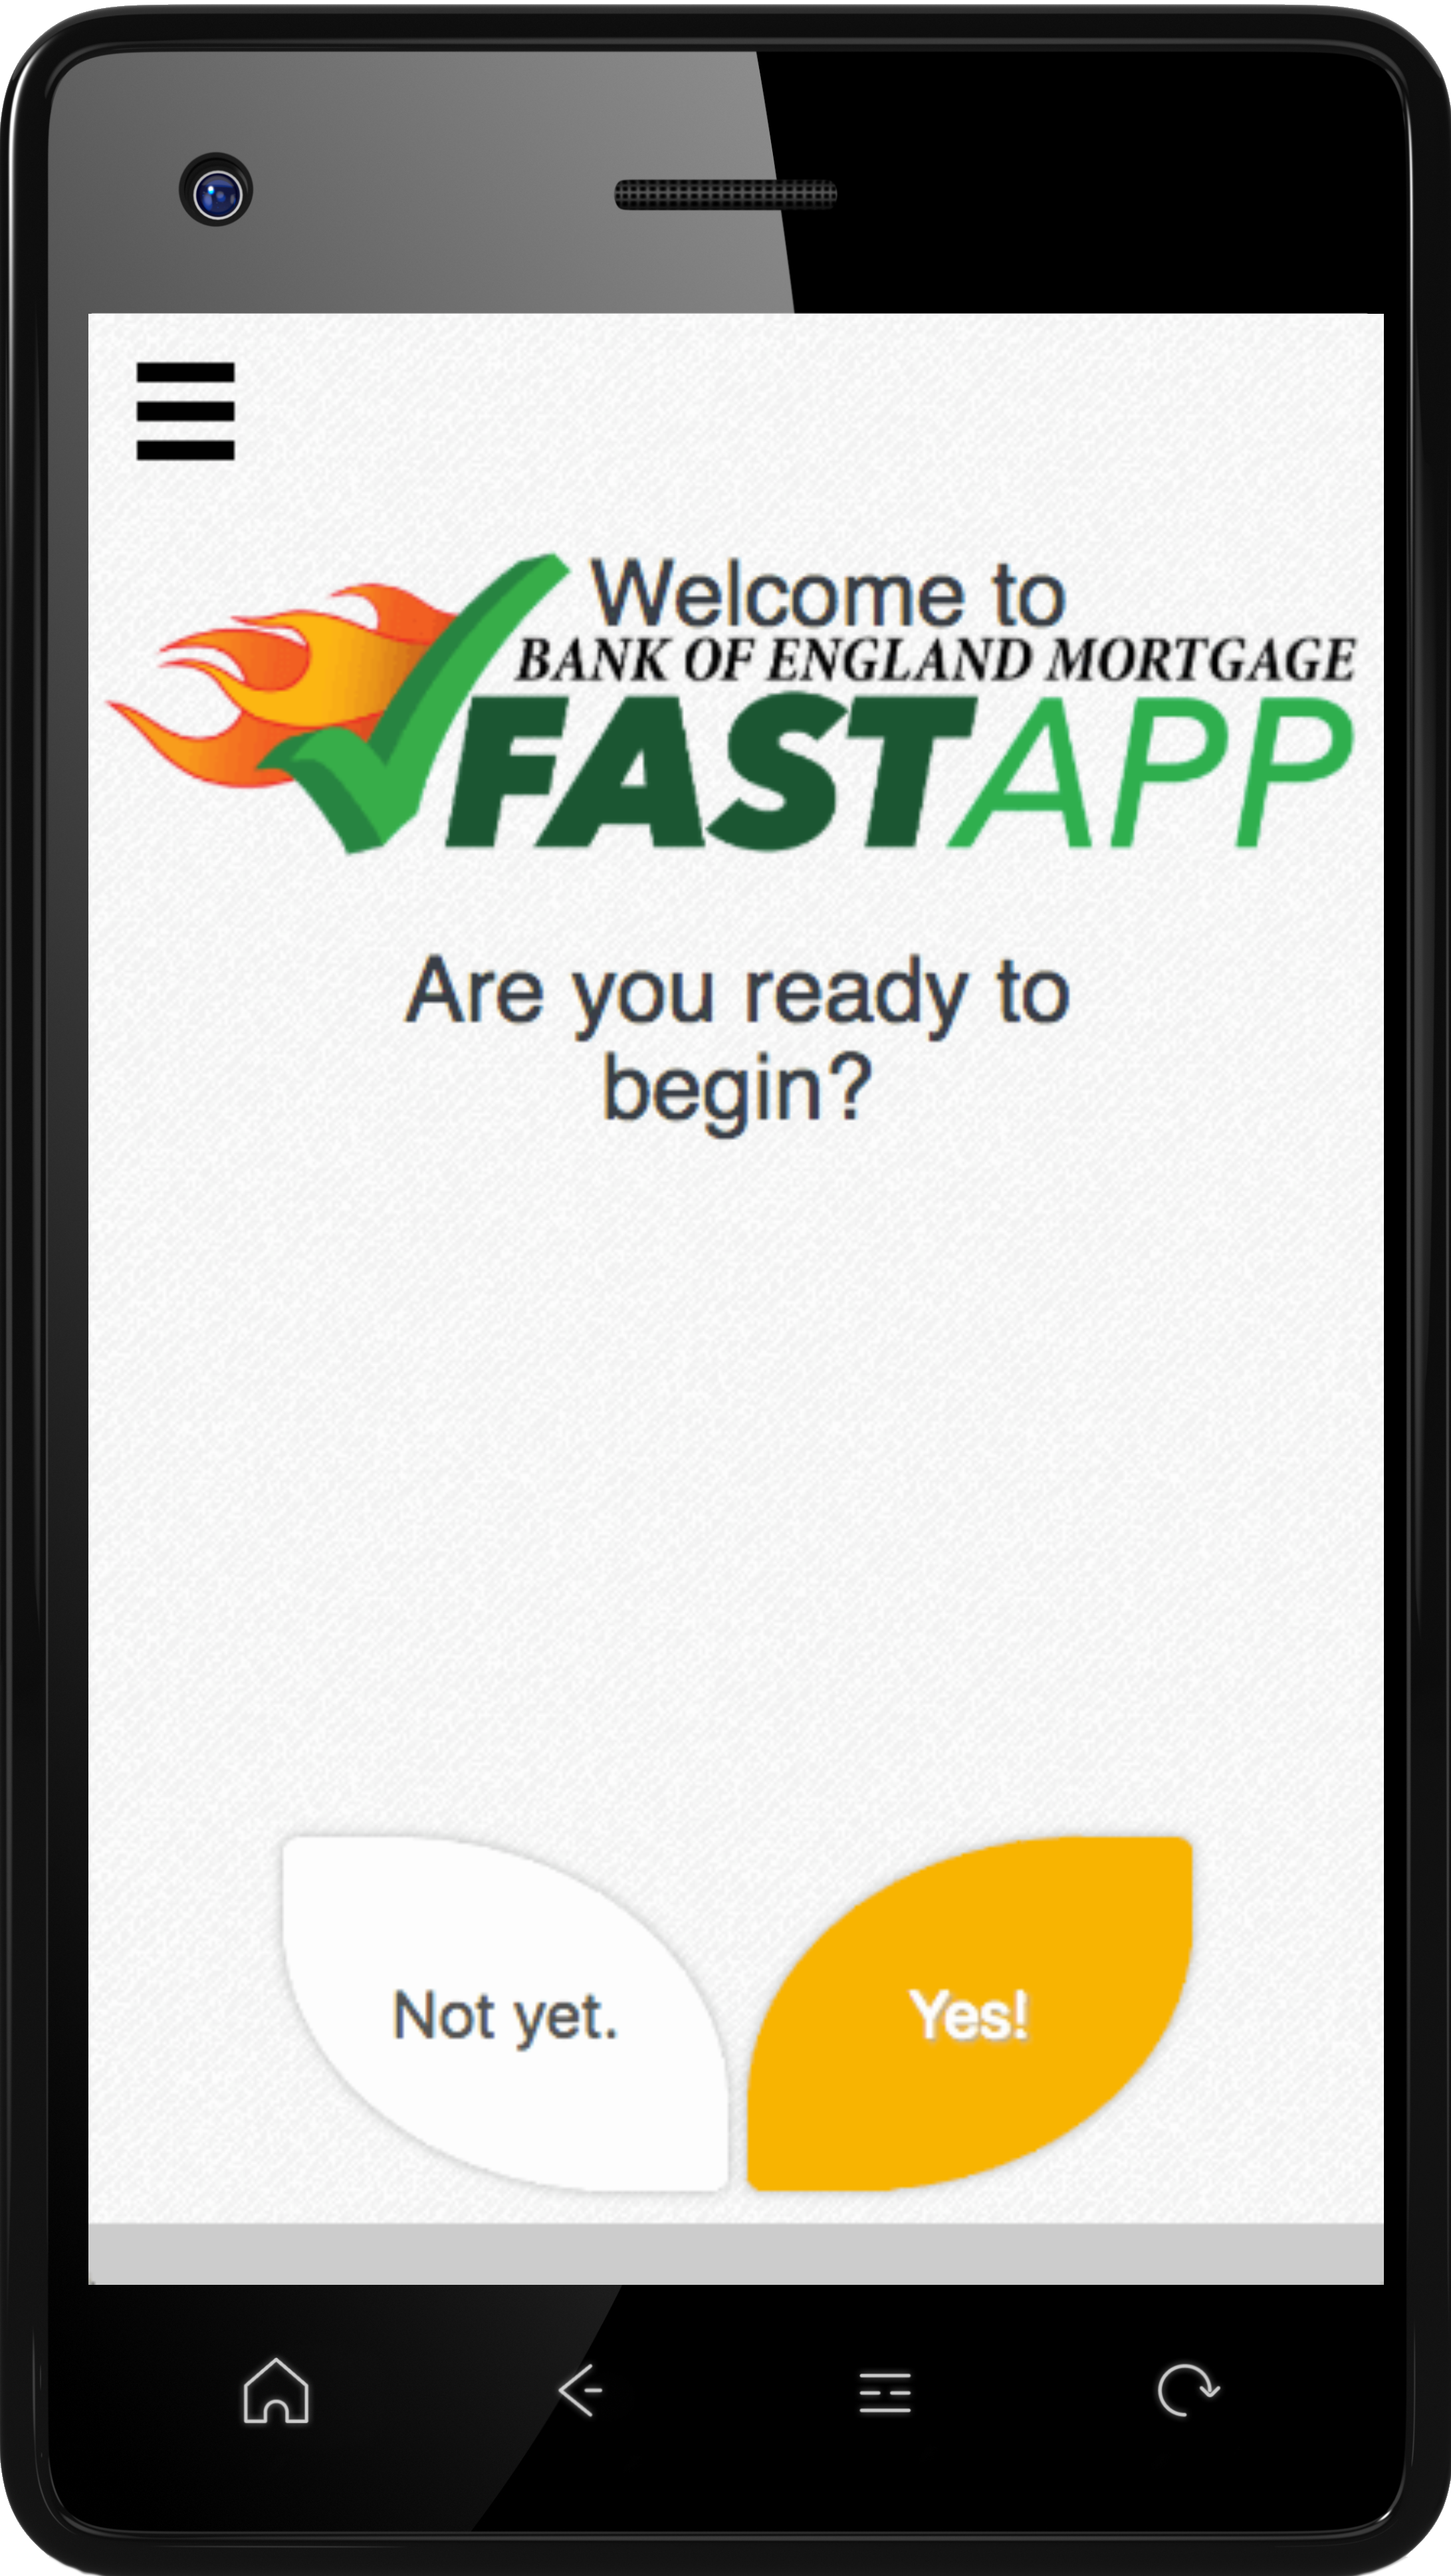 Fastapp Image Start